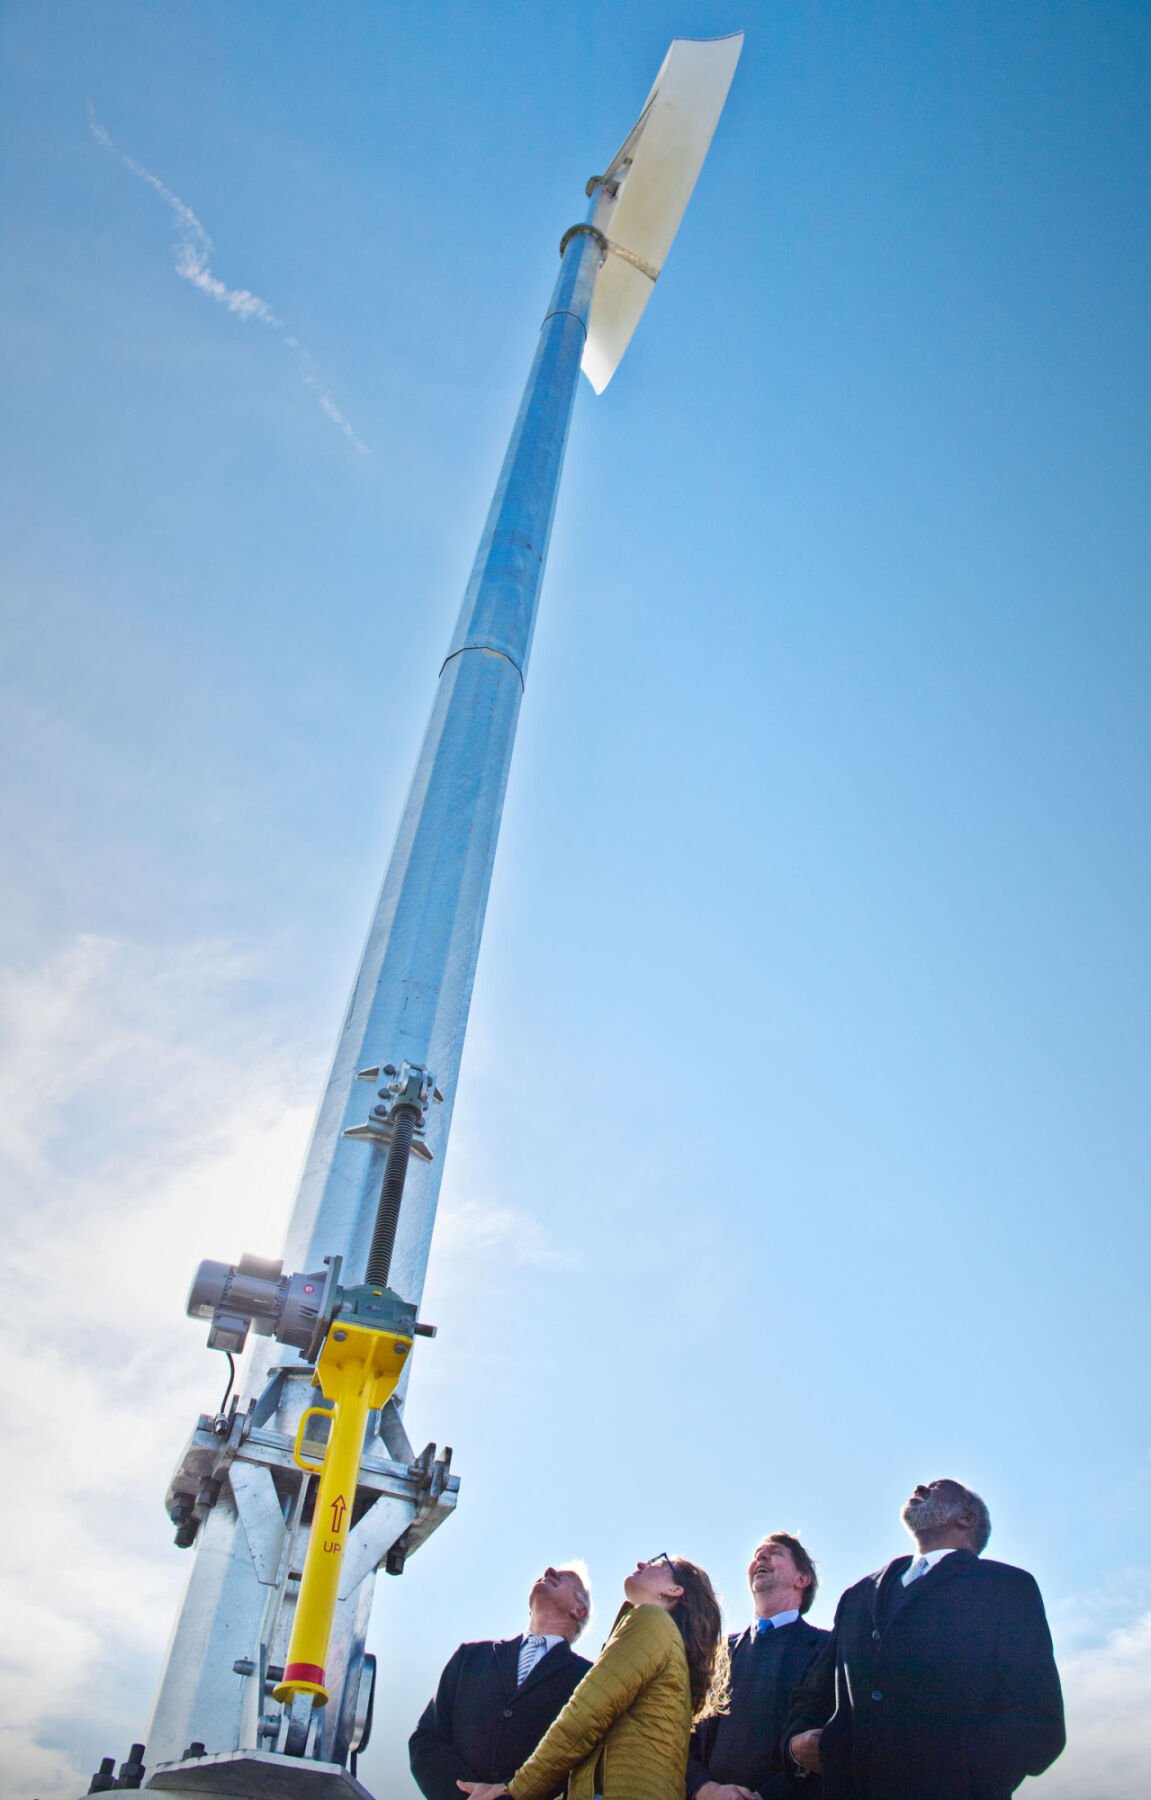 SUNY Potsdam, Clarkson launch new wind turbine